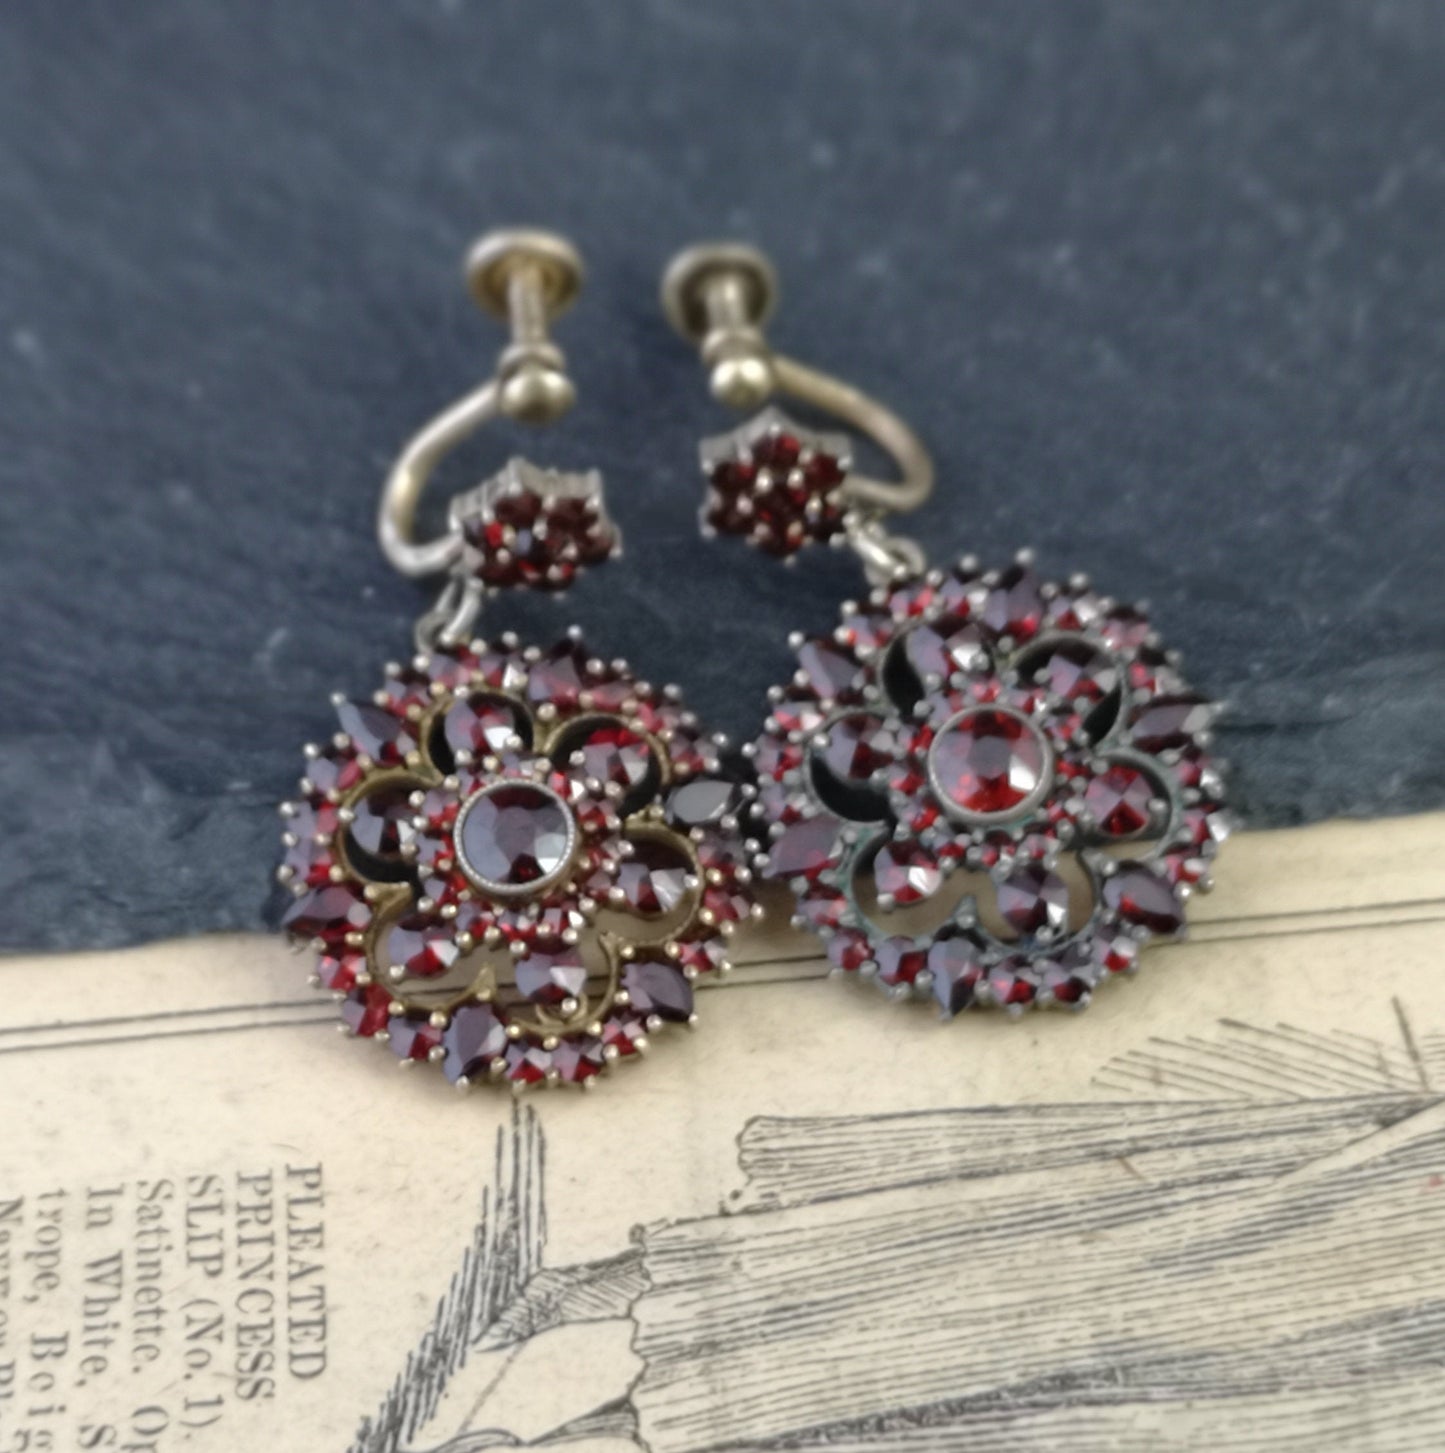 Antique Victorian bohemian garnet earrings, forget me not, dangly earrings